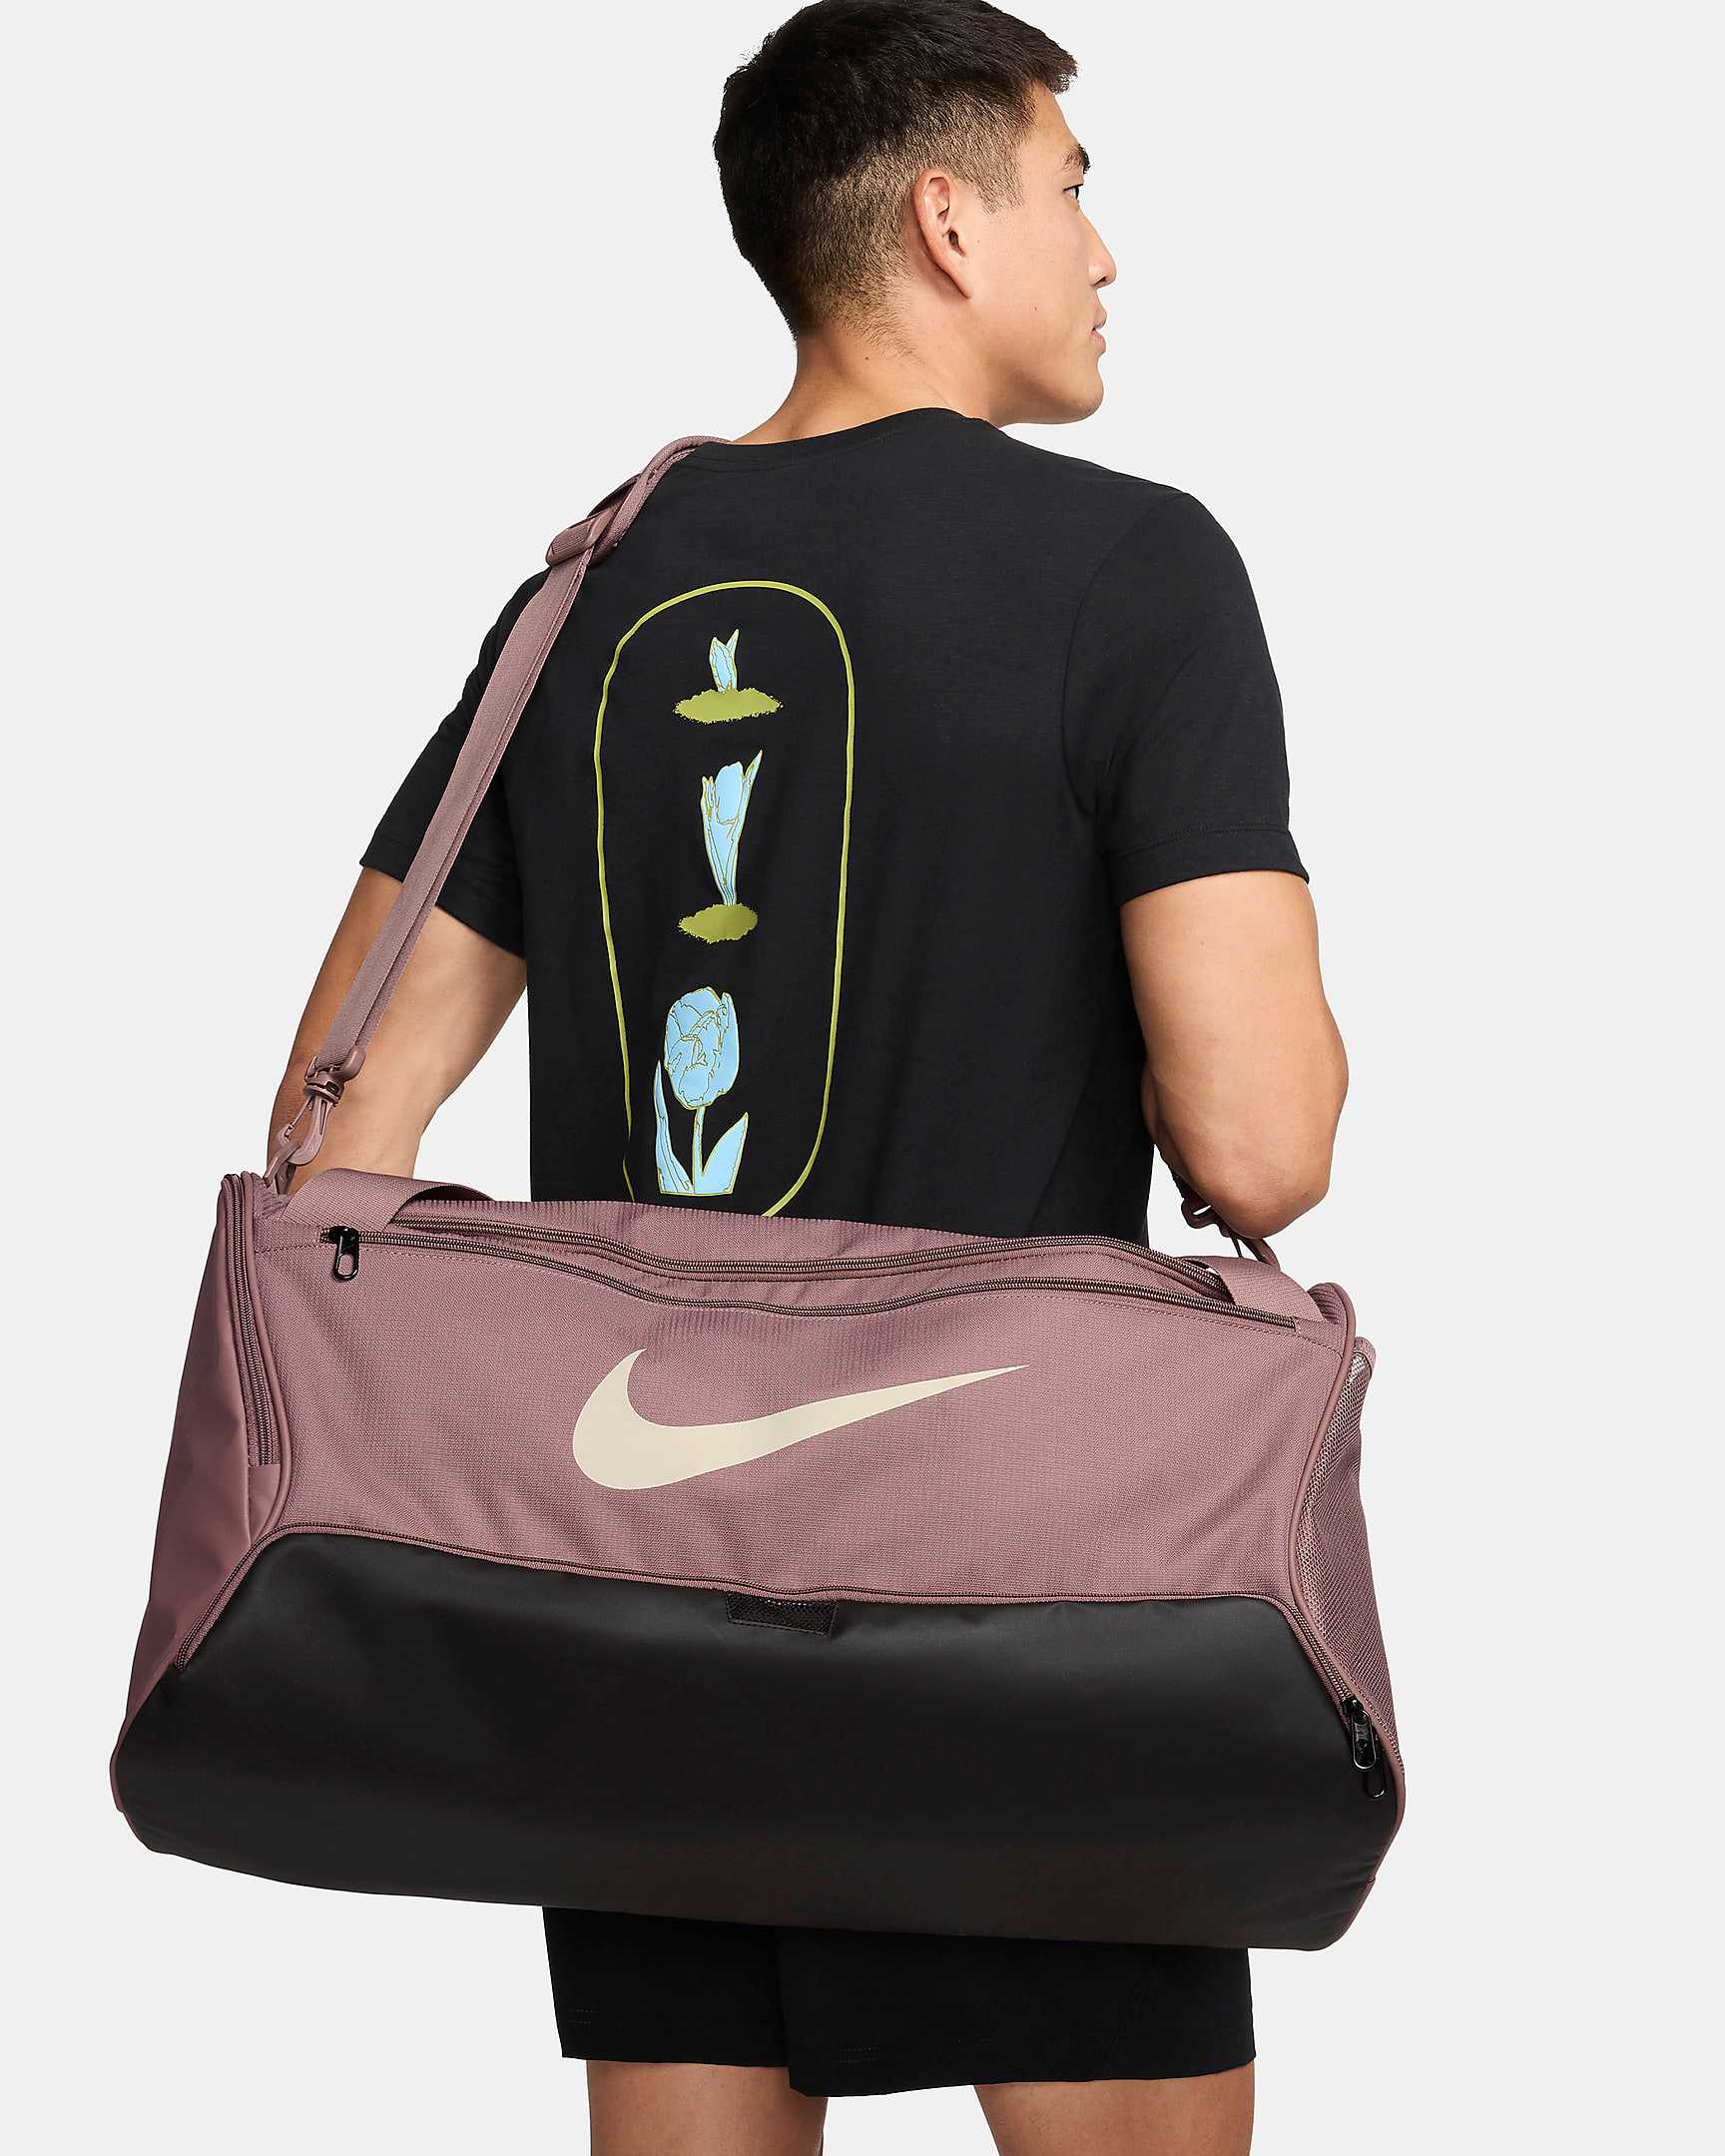 Nike Brasilia Small Duffle Bag  Small duffle bag, Bags, Mens bags fashion